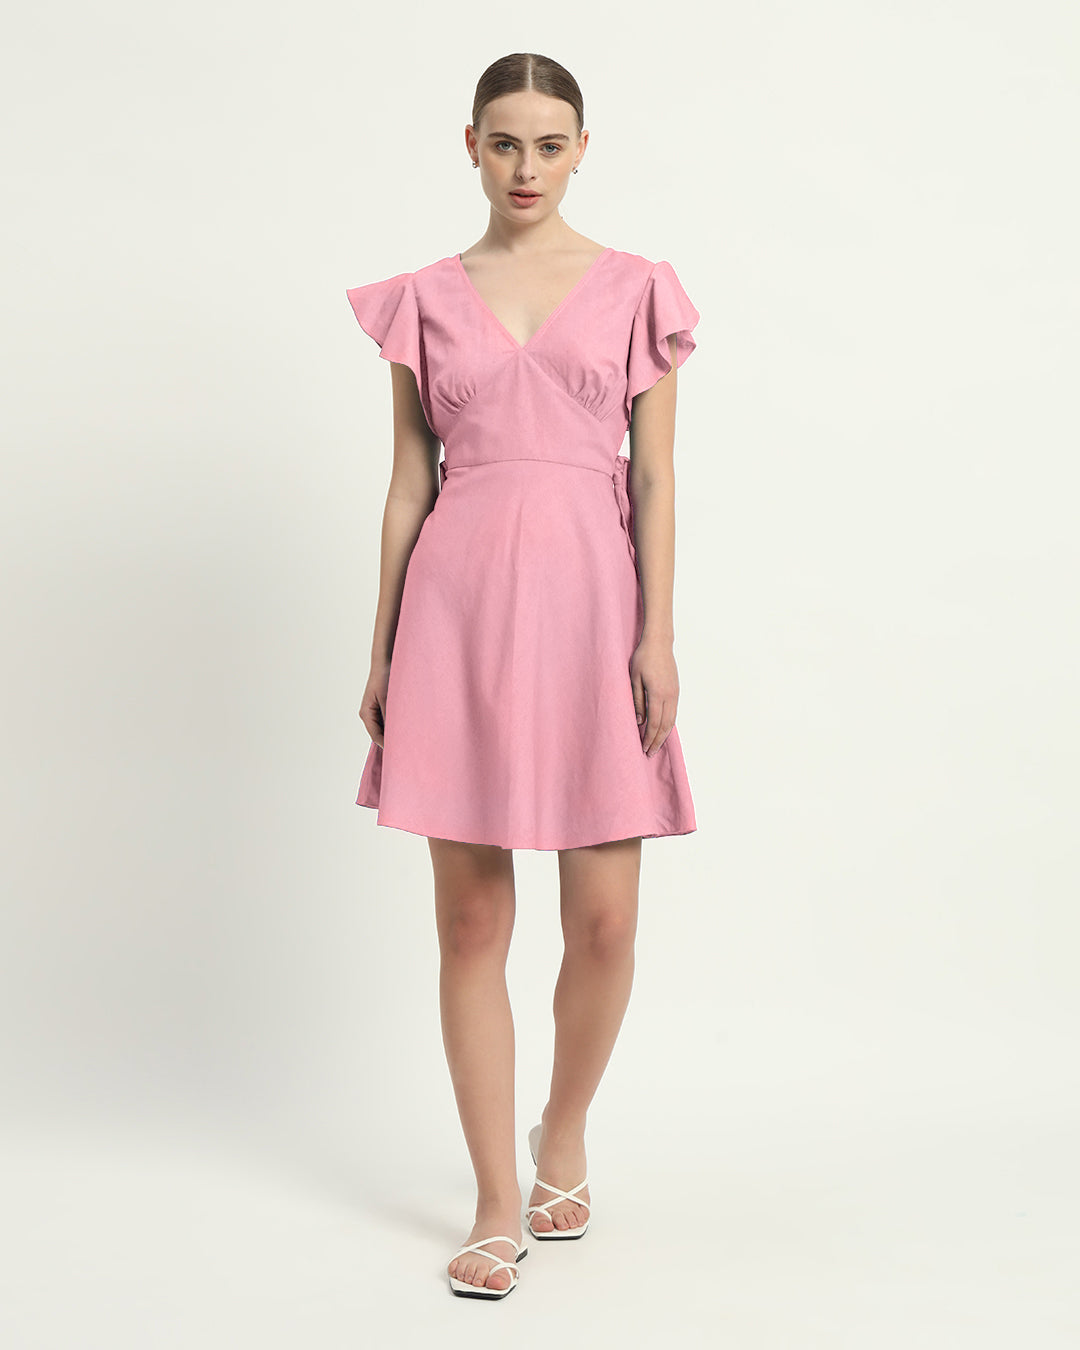 The Fondant Pink Fairlie Cotton Dress